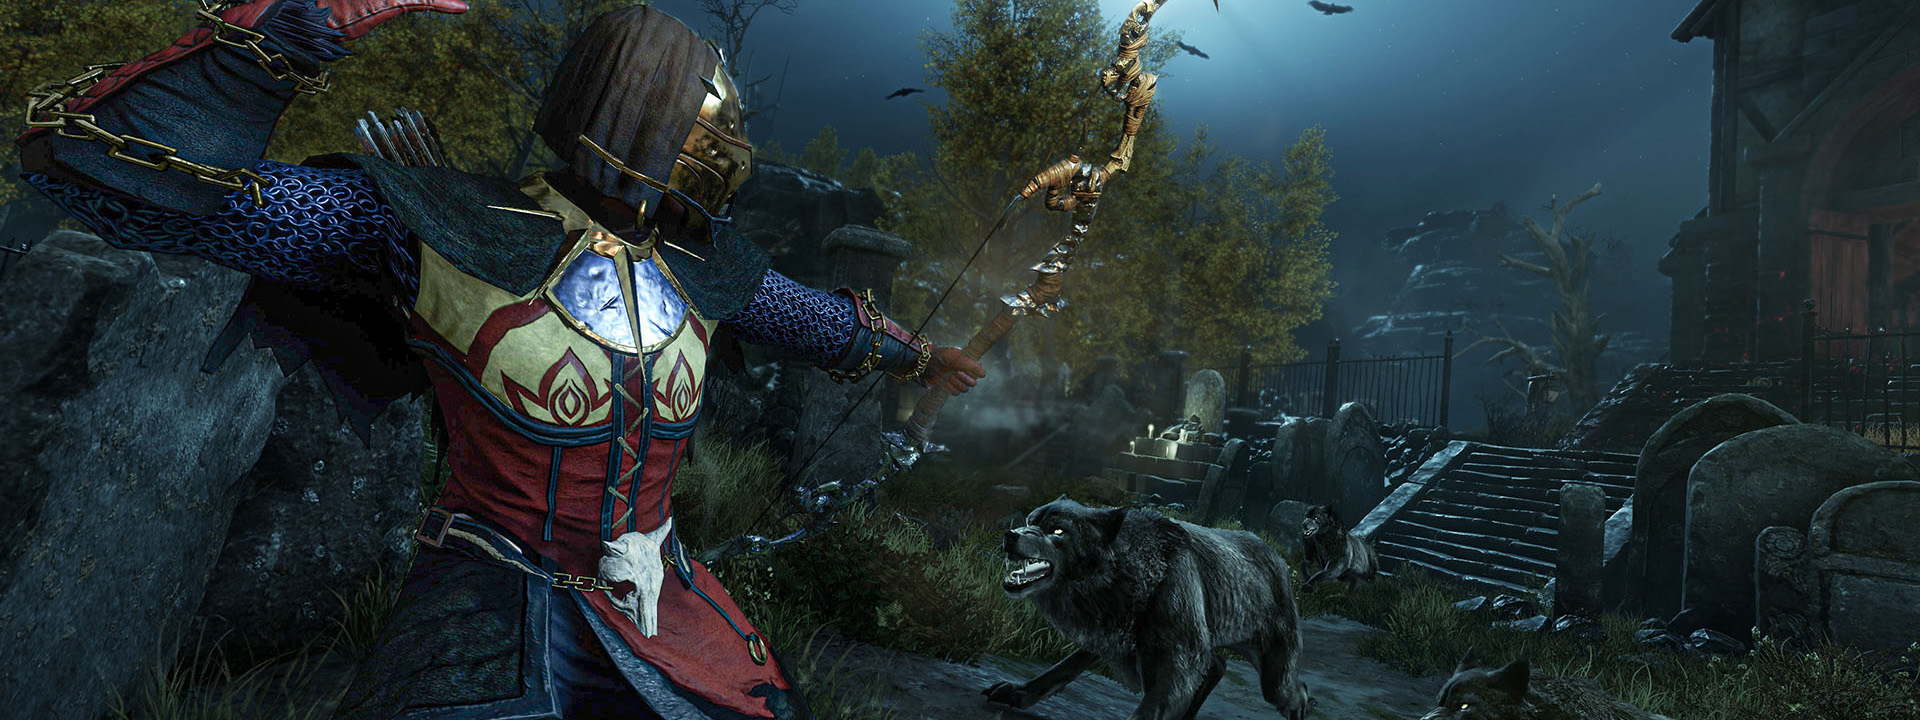 Une image représentant un combat au clair de lune. Un personnage vient de tirer une flèche sur le loup qu'il affronte.